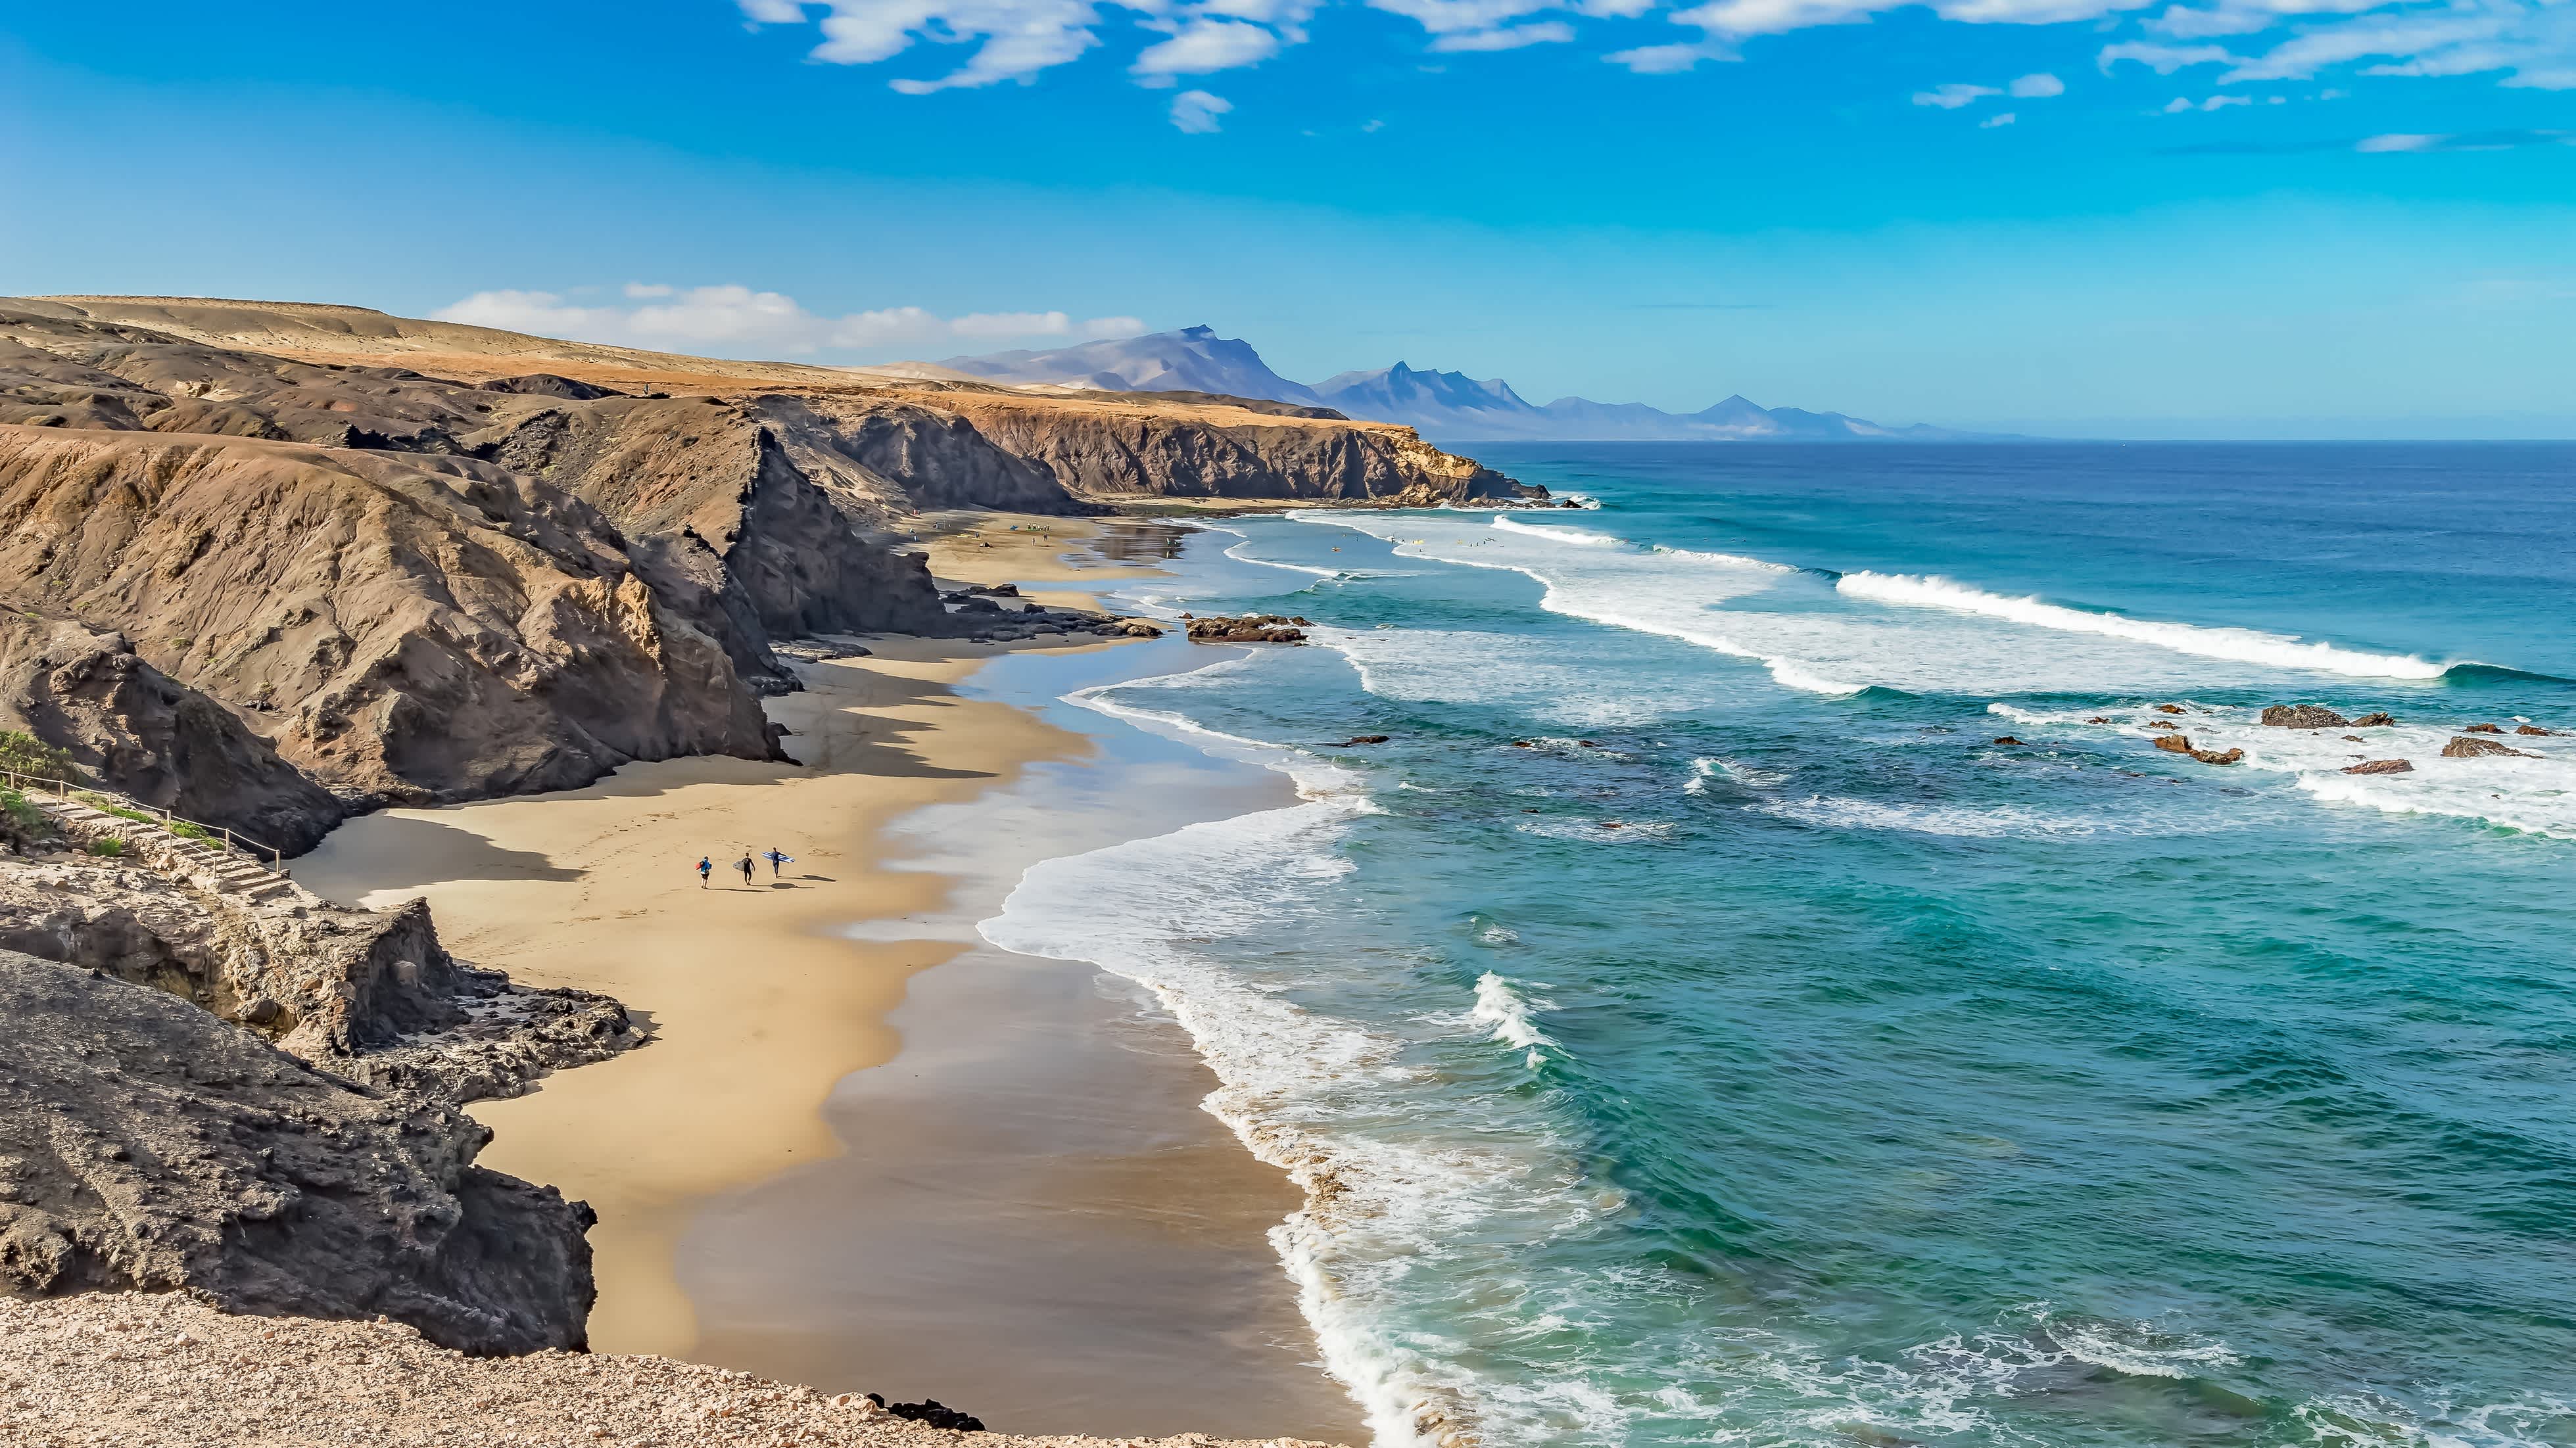 Fuerte Ventura ist aufgrund ihrer Strände eine beliebte Insel für einen Kanaren Urlaub.